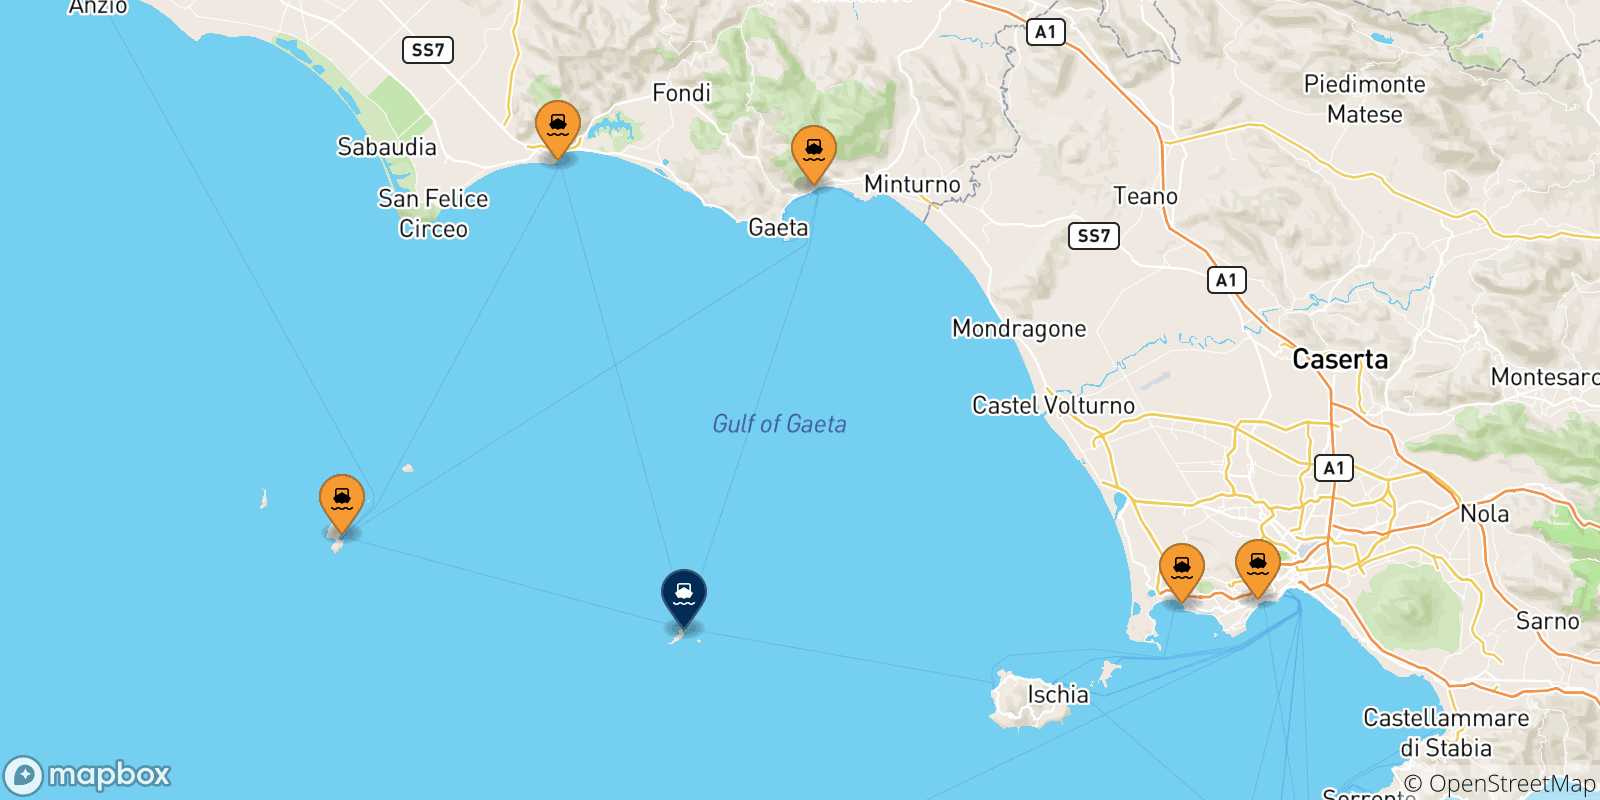 Carte des traversées possibles entre l'Italie et Ventotene